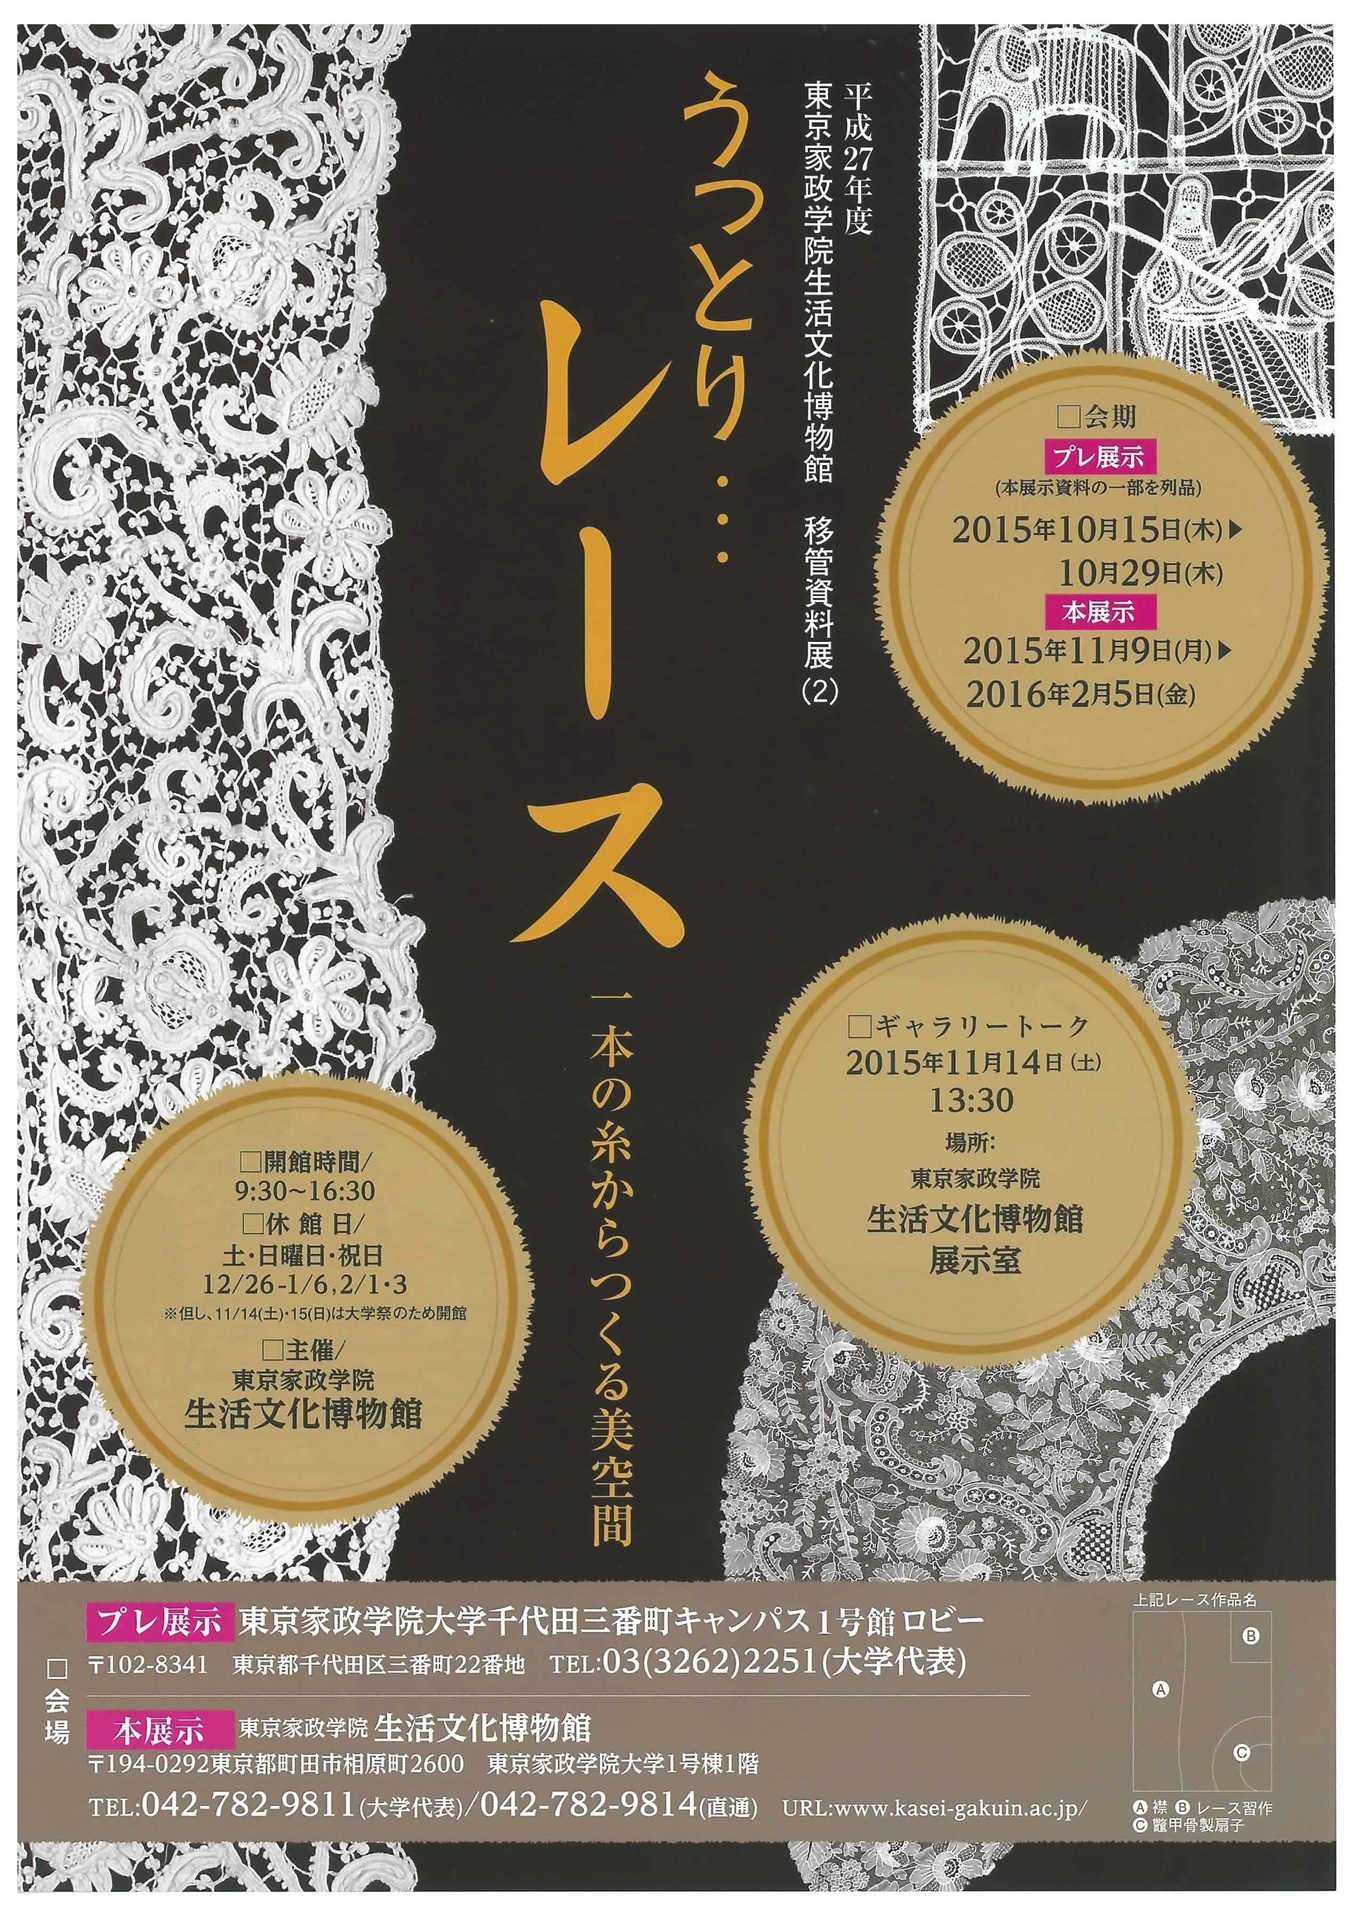 東京家政学院大学 生活文化博物館が特別展「うっとり…レース 一本の糸からつくる美空間」を開催